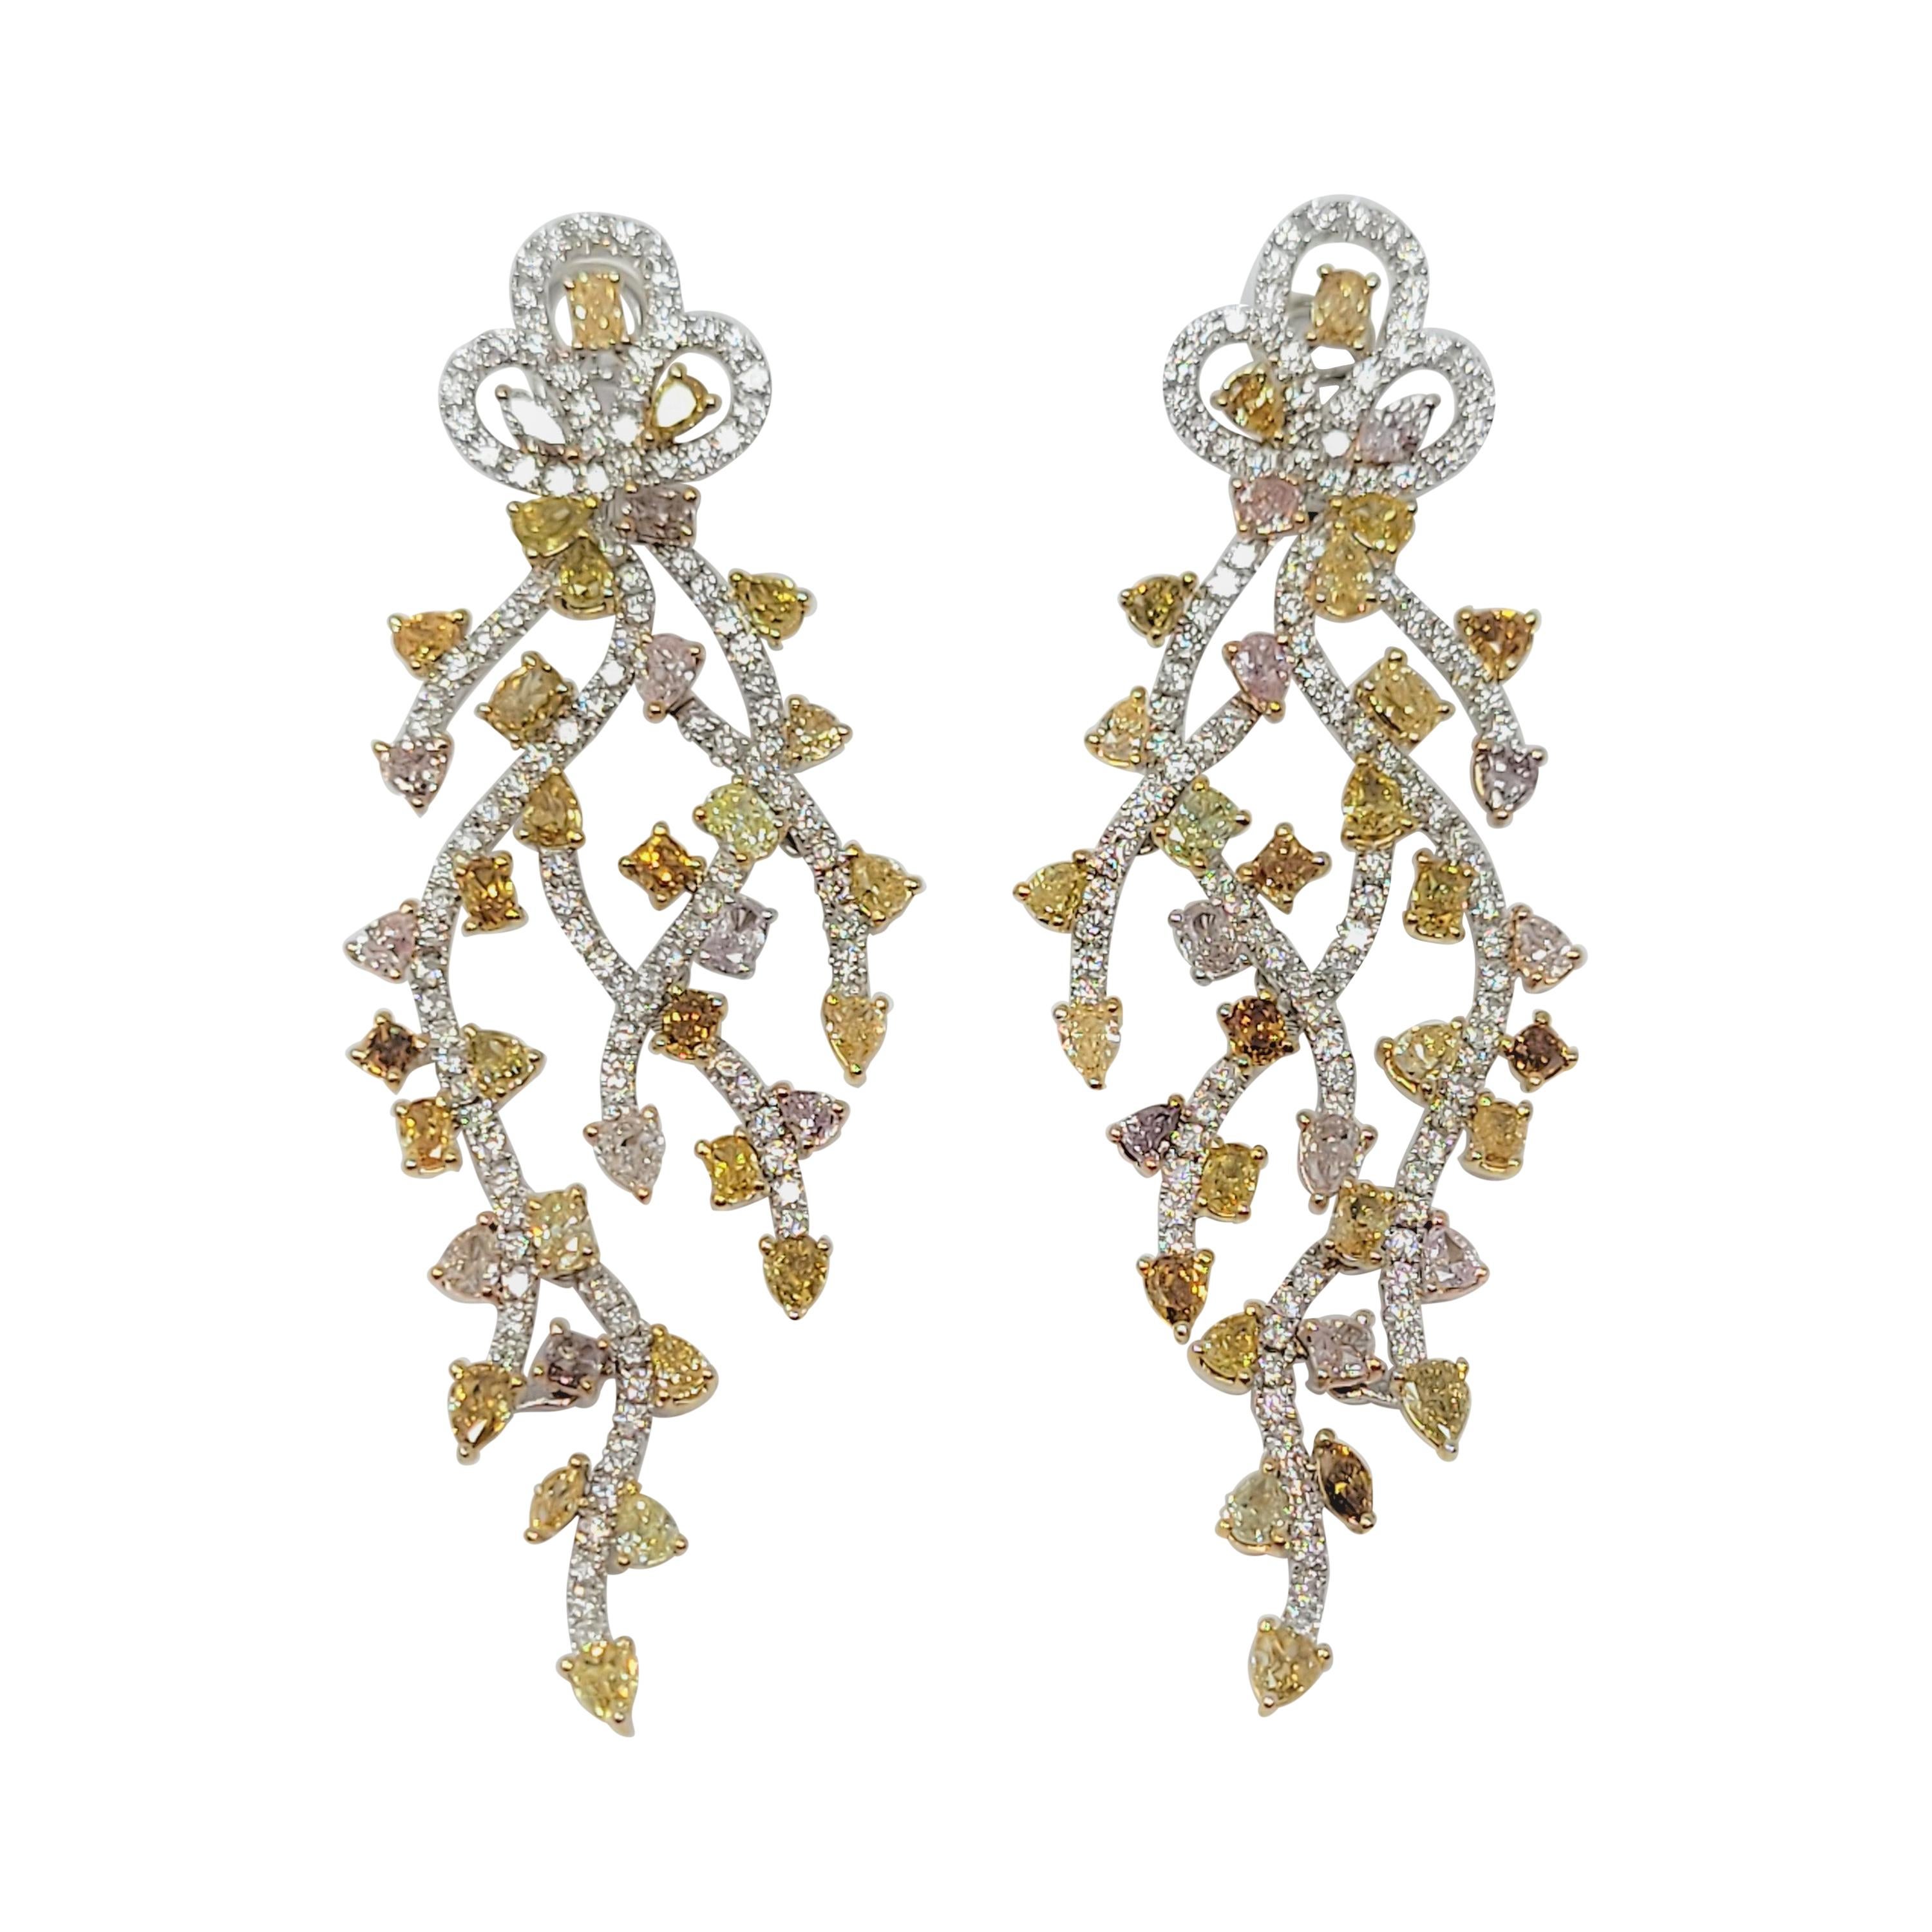 Yvel 14.0 Carat Fancy Colored Diamond Earrings in 18 Karat White Gold